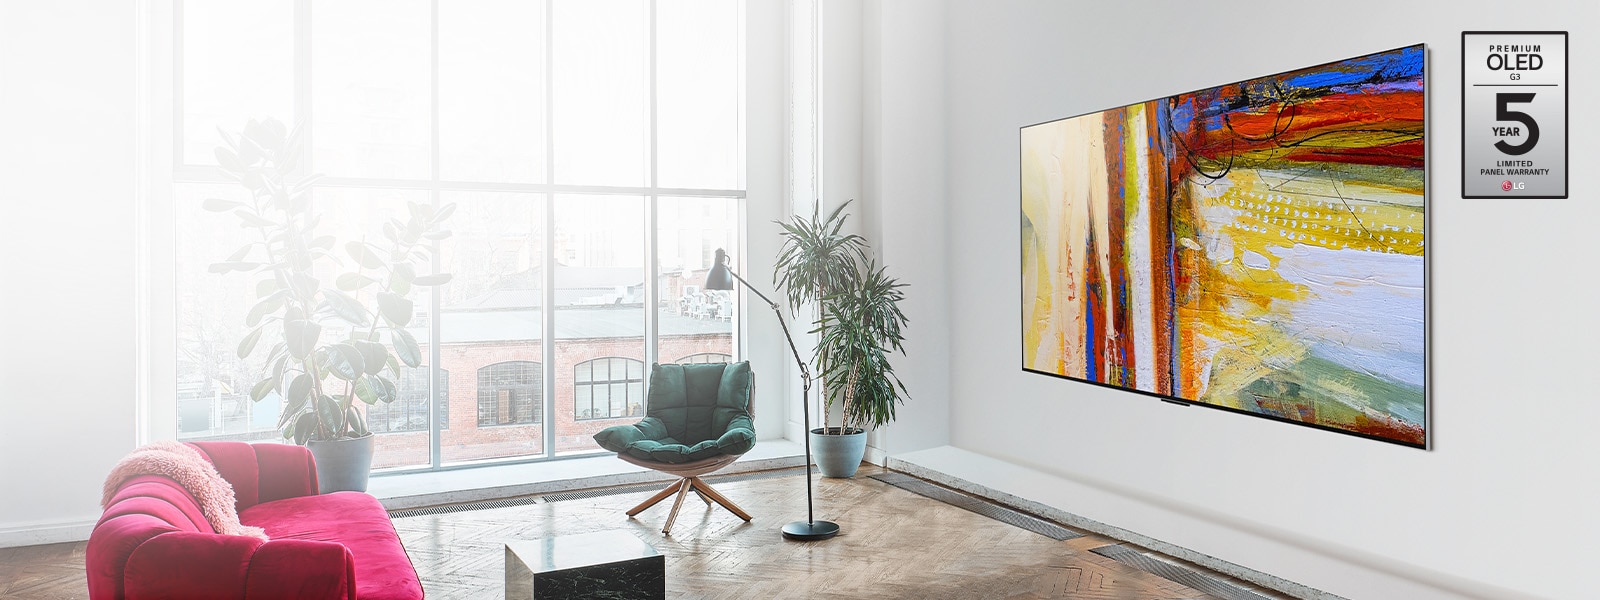 Slika LG OLED G3, ki prikazuje barvit kos abstraktne umetnosti v svetli in barviti sobi.